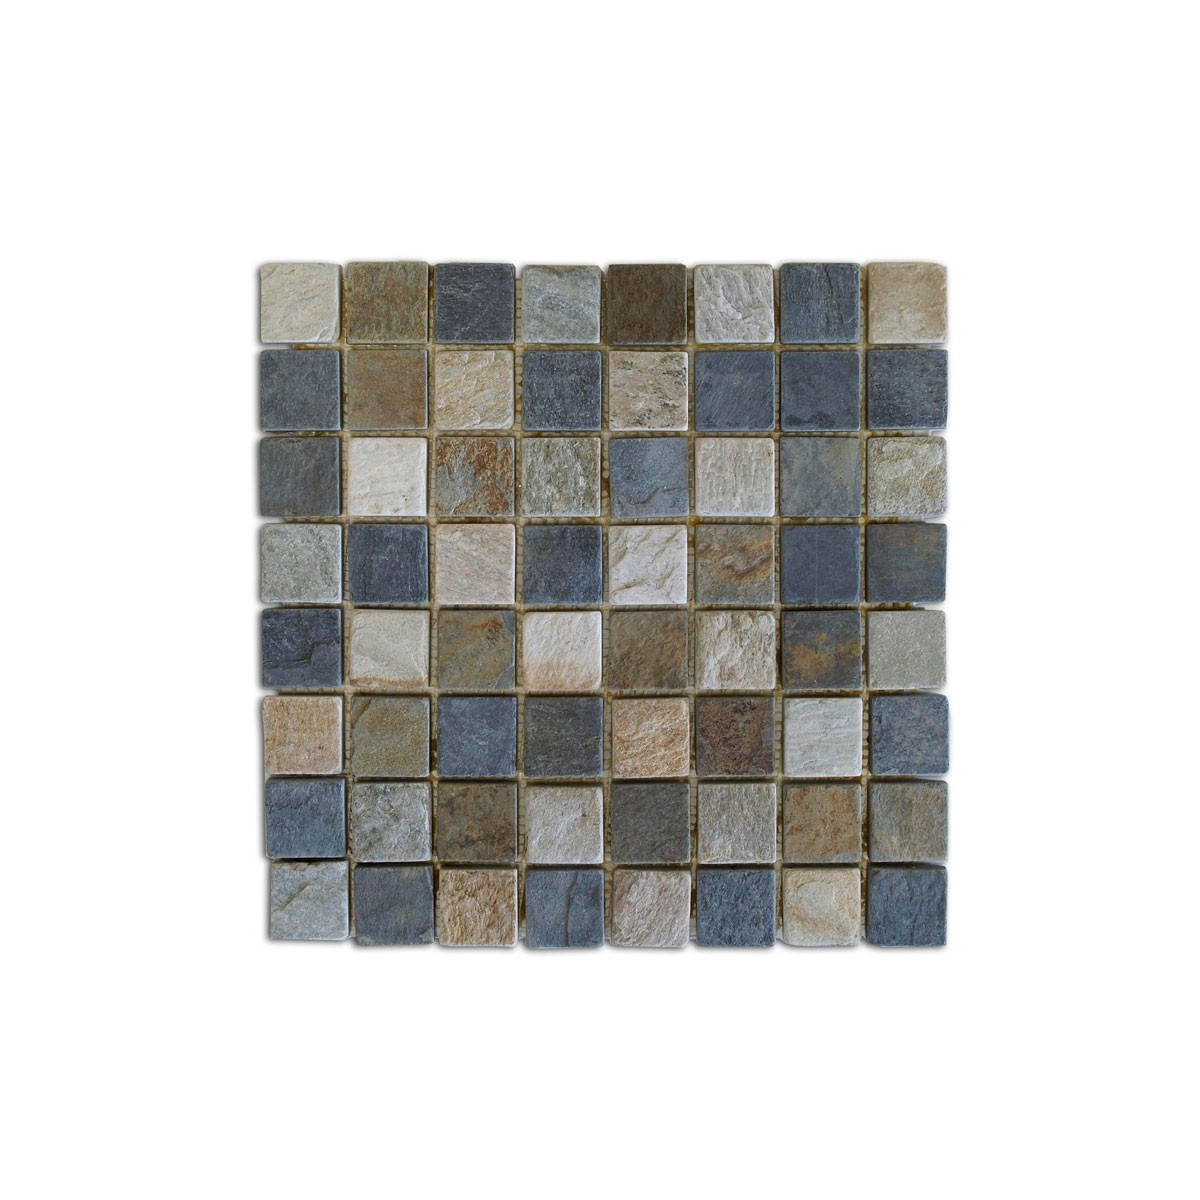 Mosaico Brasil 30,5x30,5x1 (m2)